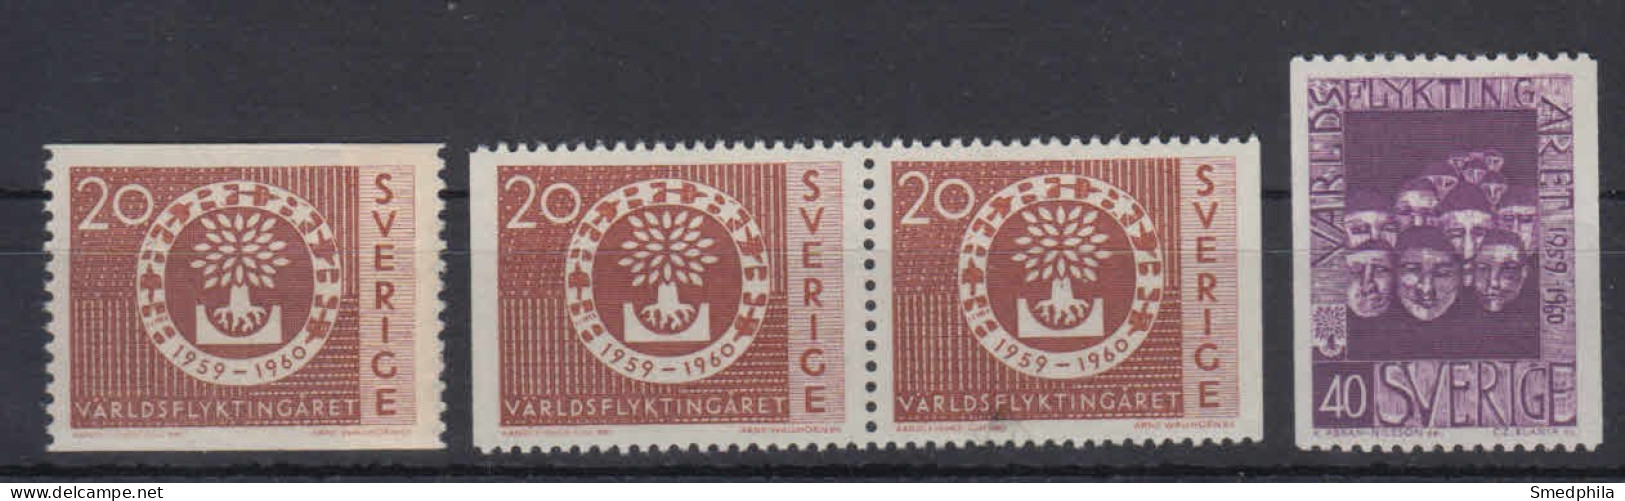 Sweden 1960 - Michel 457-458 MNH ** - Neufs